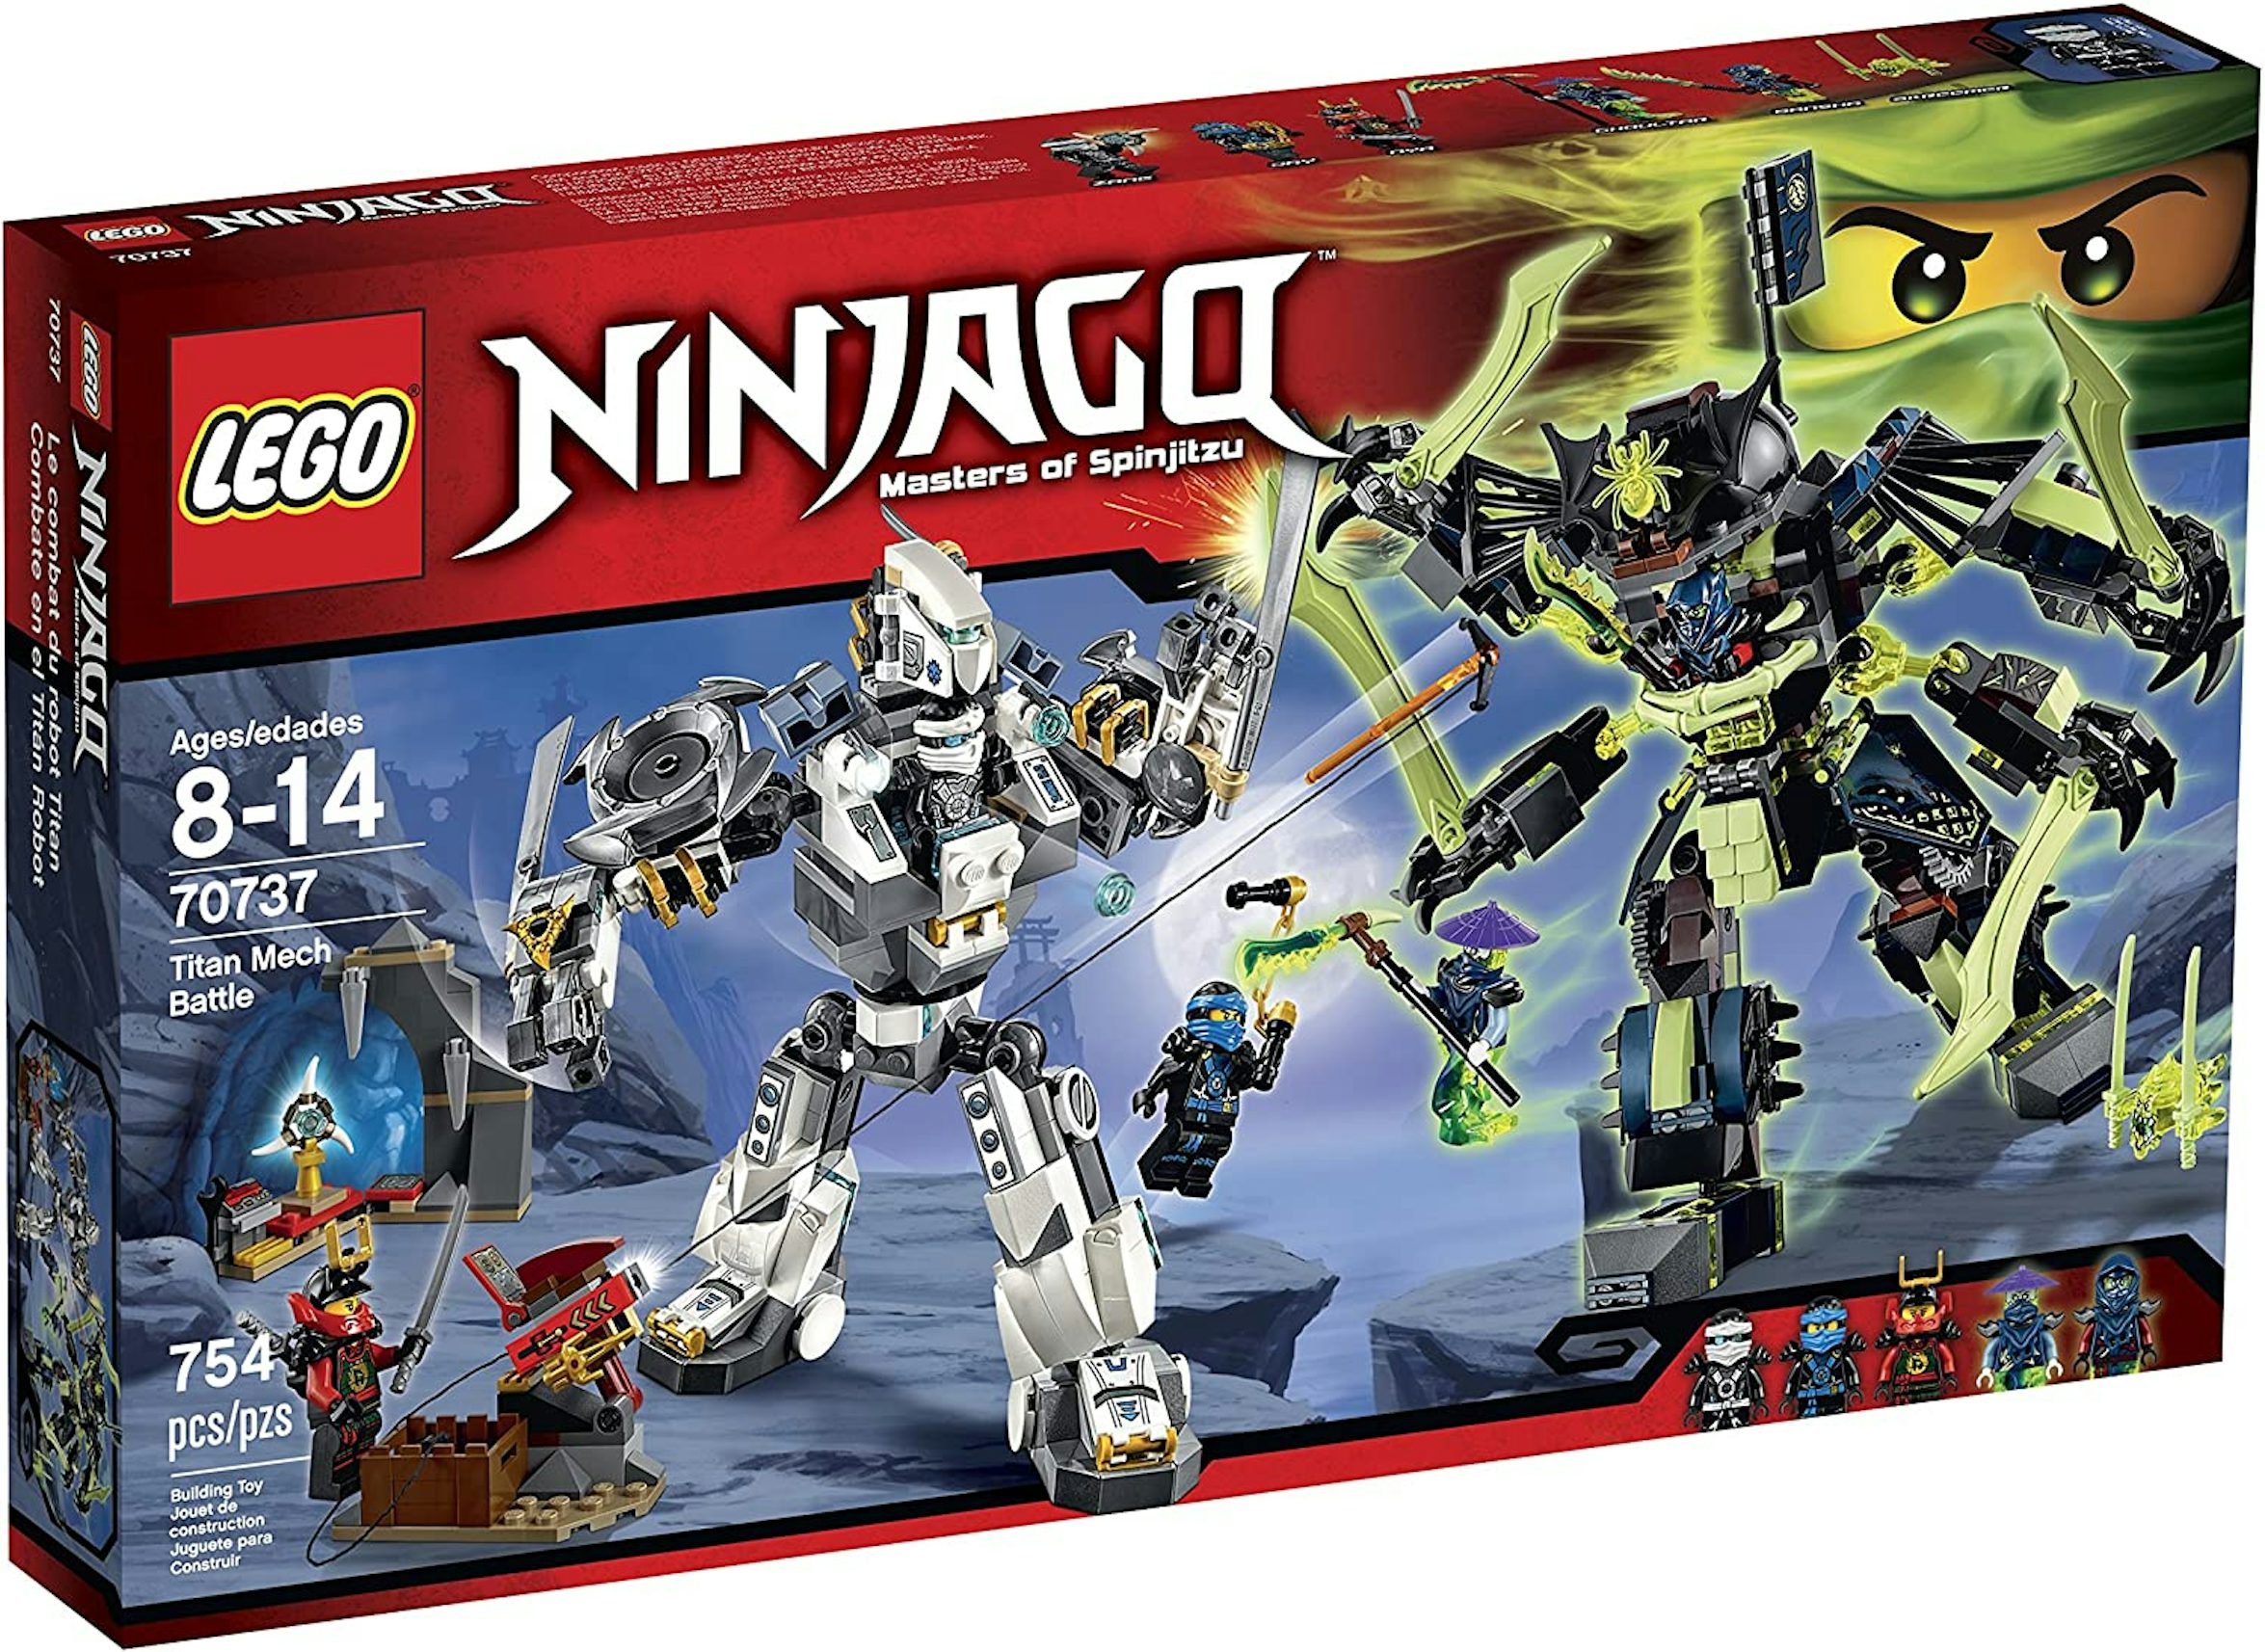 LEGO Ninjago Titan Mech Battle Set 70737 - US